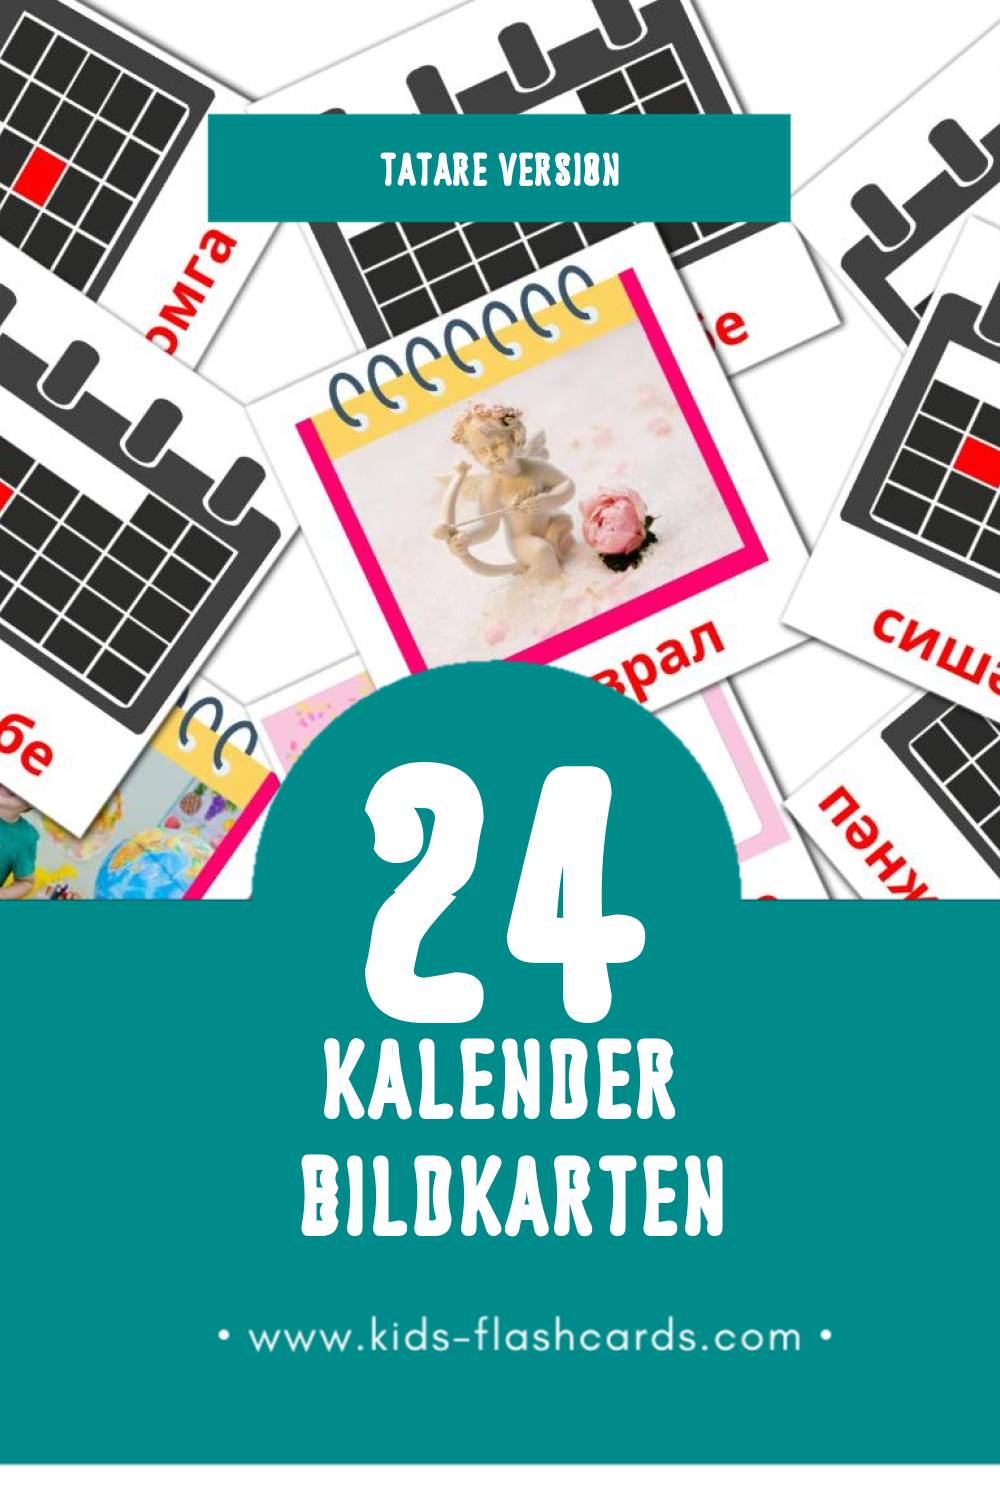 Visual Календарь Flashcards für Kleinkinder (24 Karten in Tatar)